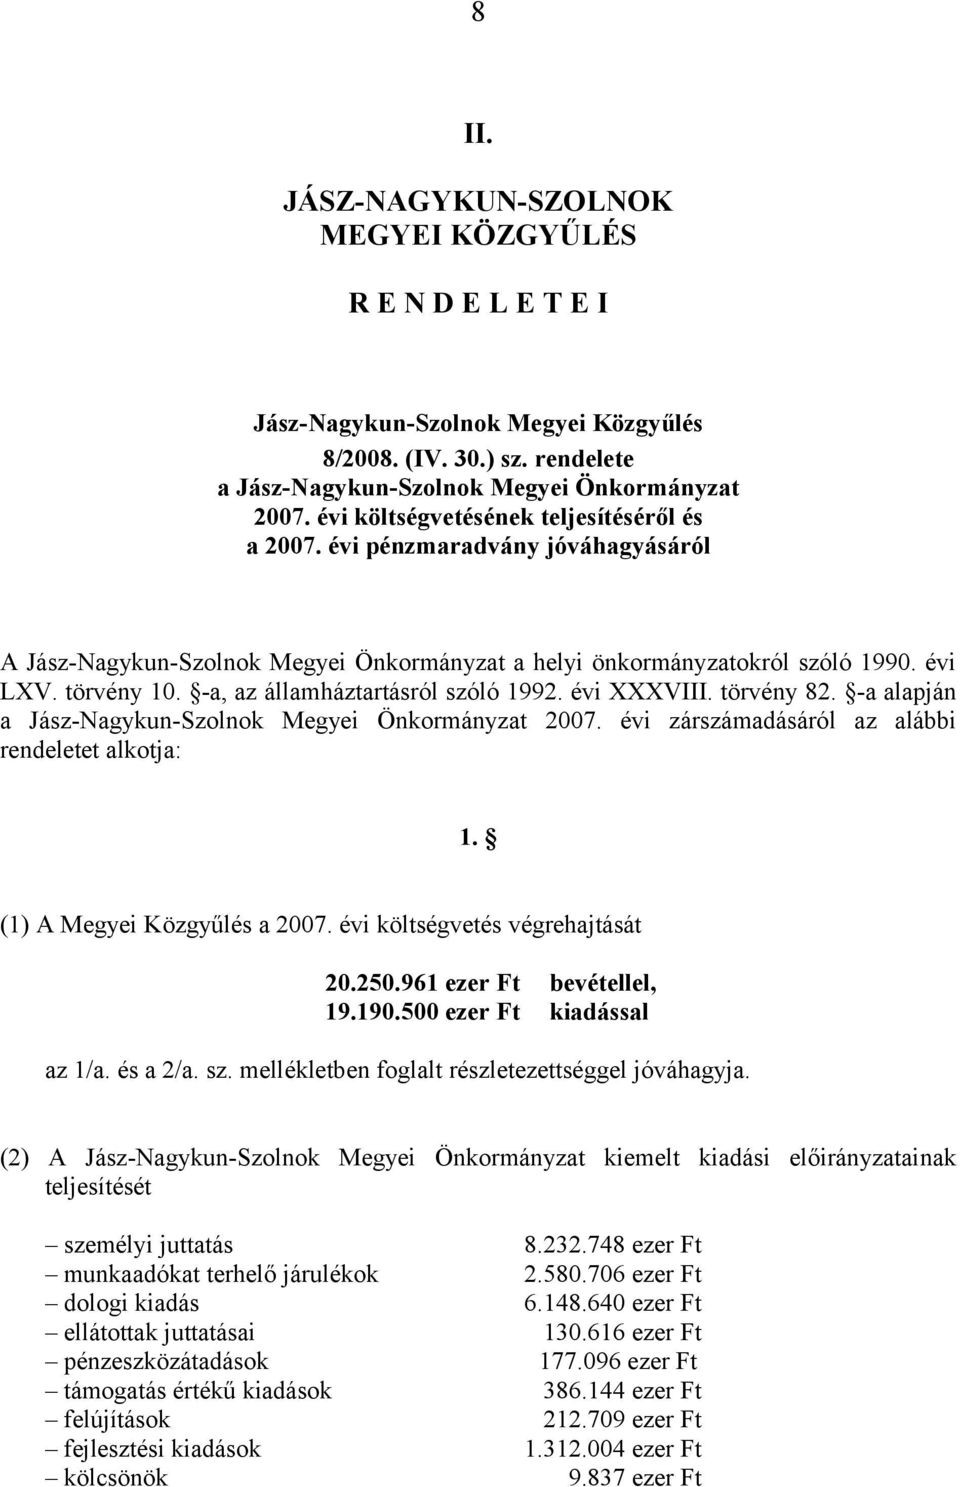 -a alapján a Jász-Nagykun-Szolnok Megyei Önkormányzat 2007. évi zárszámadásáról az alábbi rendeletet alkotja: 1. (1) A Megyei Közgyűlés a 2007. évi költségvetés végrehajtását 20.250.